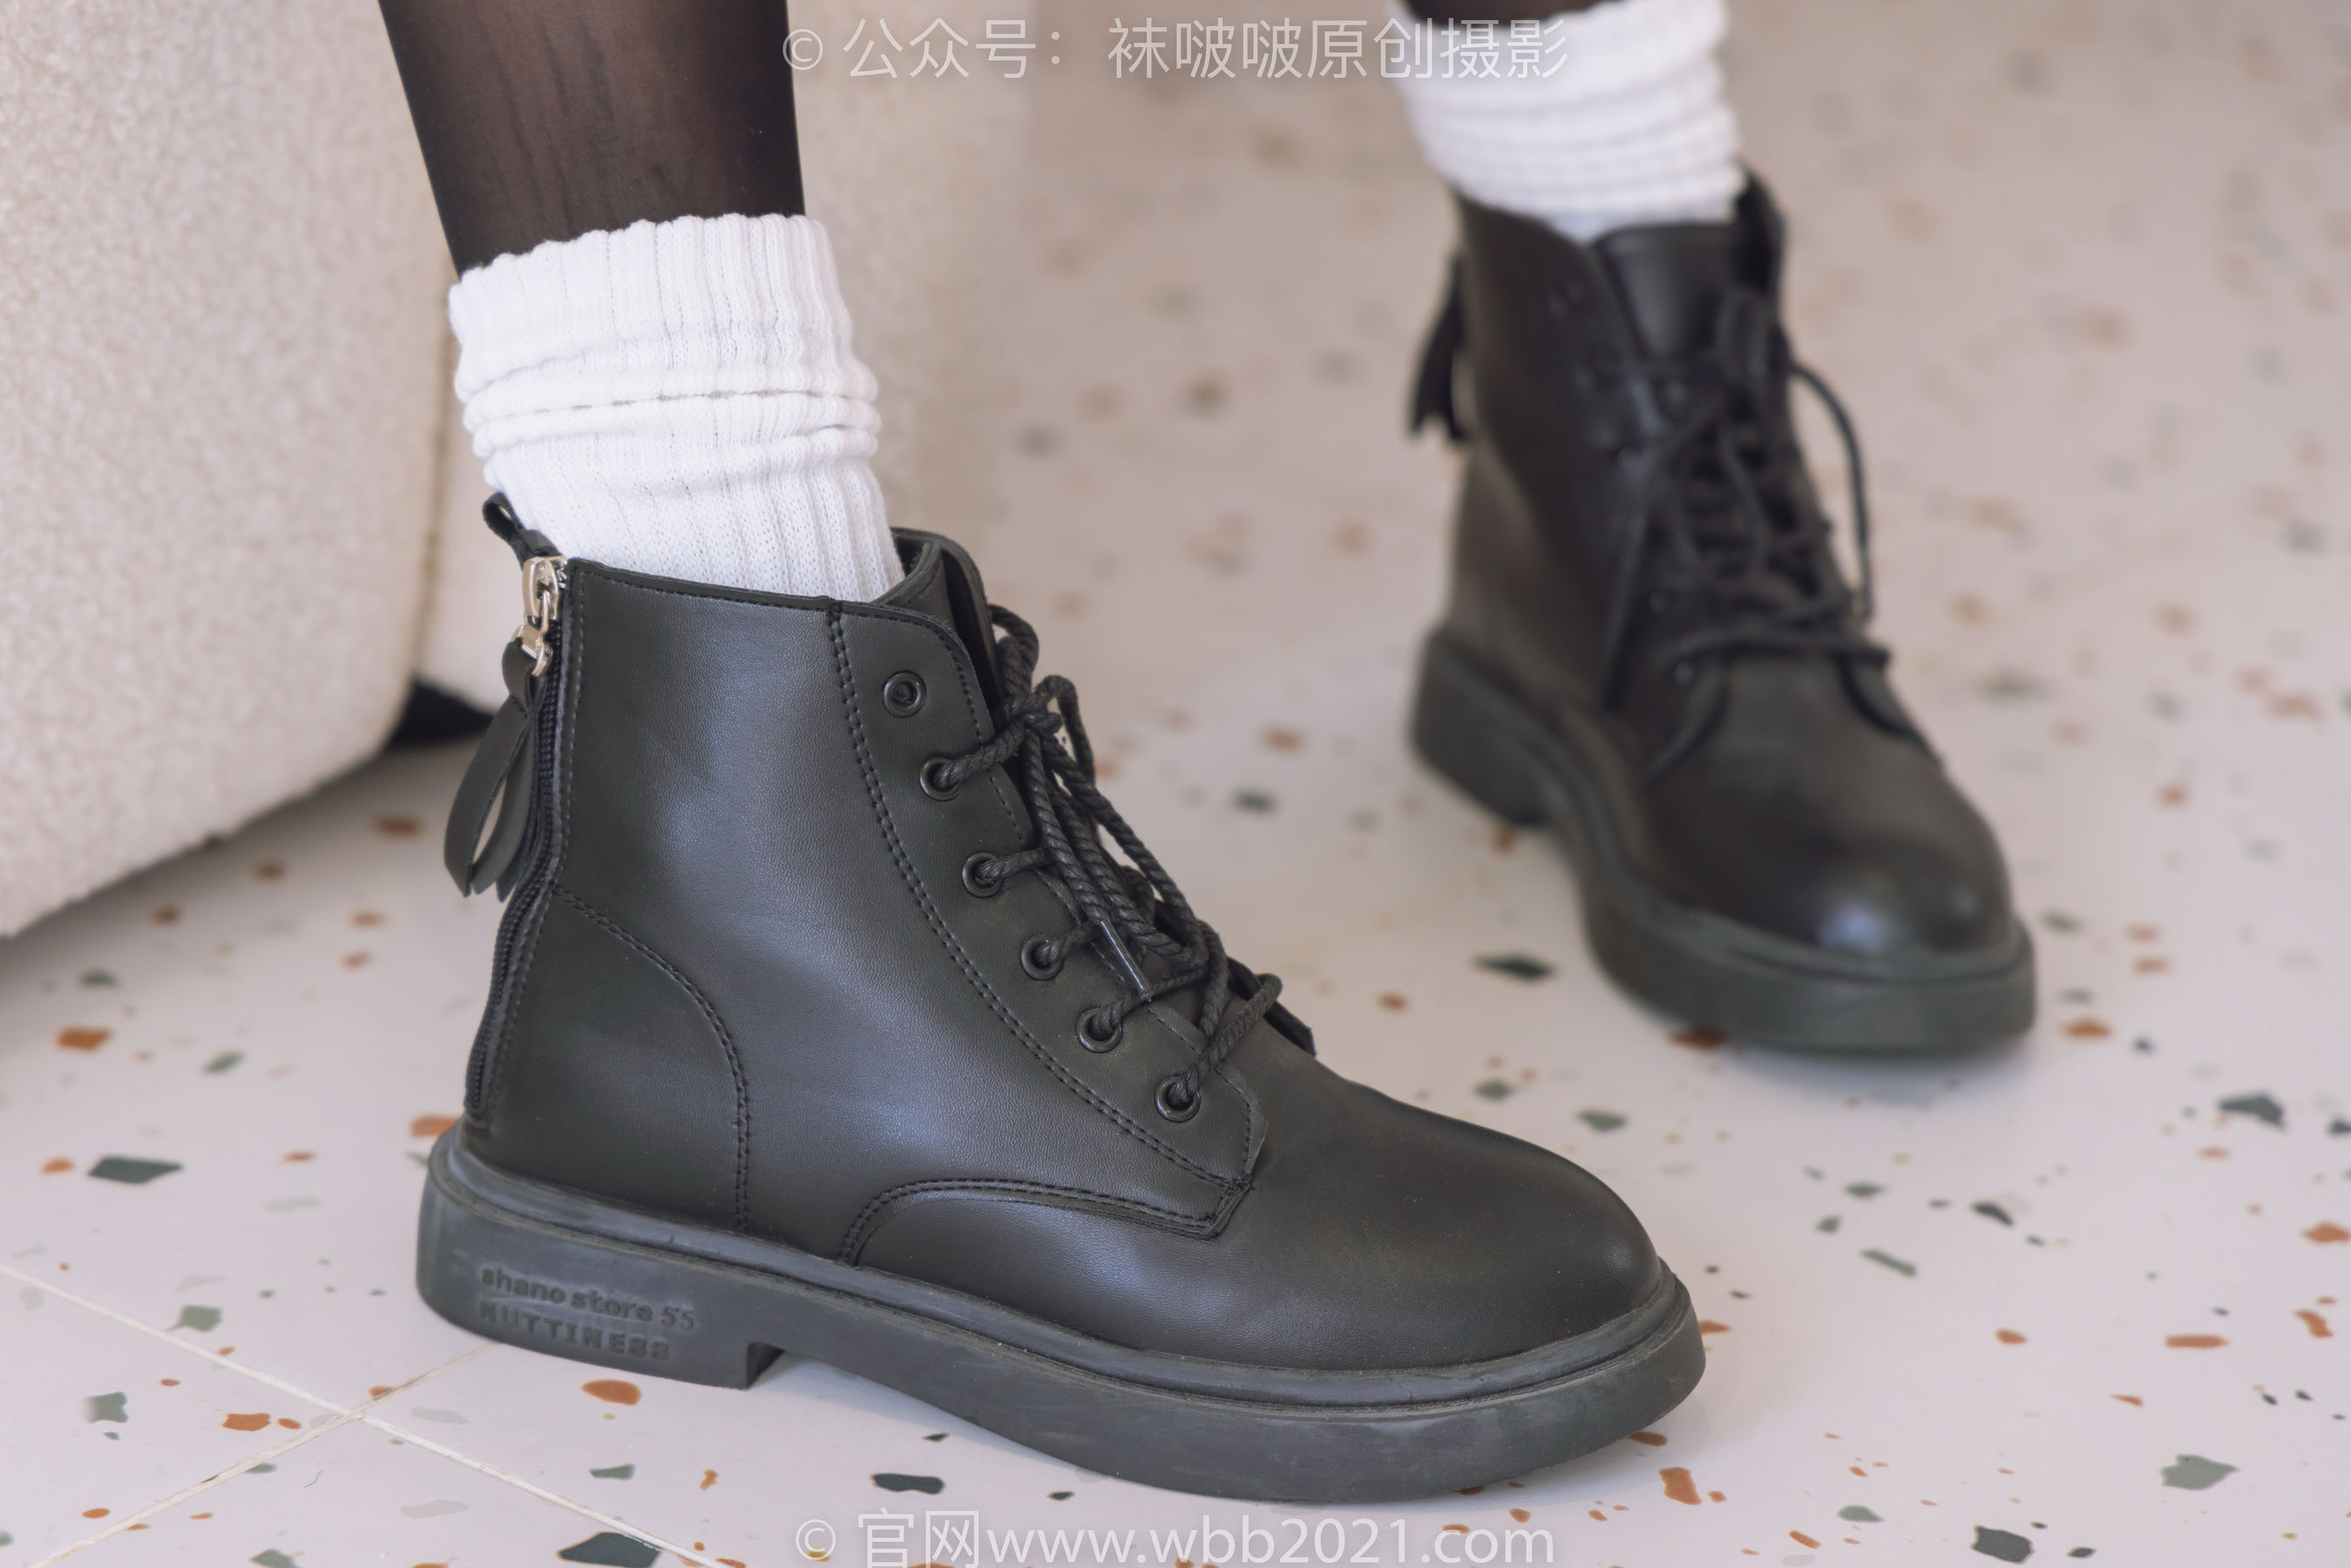 BoBoSocks袜啵啵 No.284 小甜豆 - 短靴、皮鞋、两双白棉袜、油亮黑丝、爱心印花白丝/(150P)